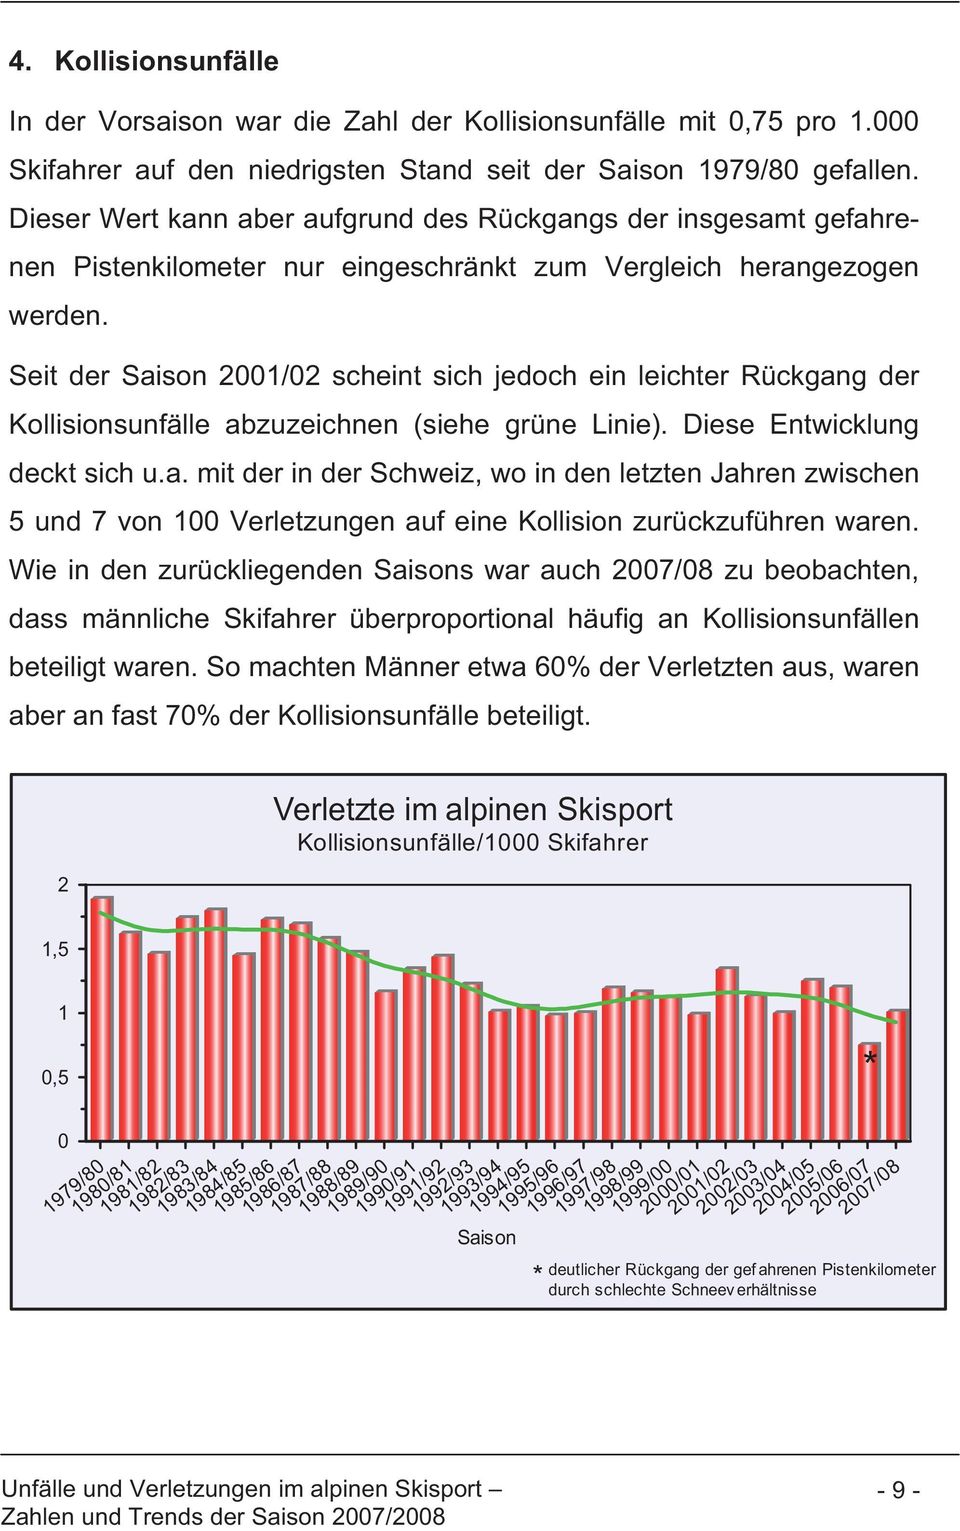 Seit der Saison 2001/02 scheint sich jedoch ein leichter Rückgang der Kollisionsunfälle abzuzeichnen (siehe grüne Linie). Diese Entwicklung deckt sich u.a. mit der in der Schweiz, wo in den letzten Jahren zwischen 5 und 7 von 100 Verletzungen auf eine Kollision zurückzuführen waren.